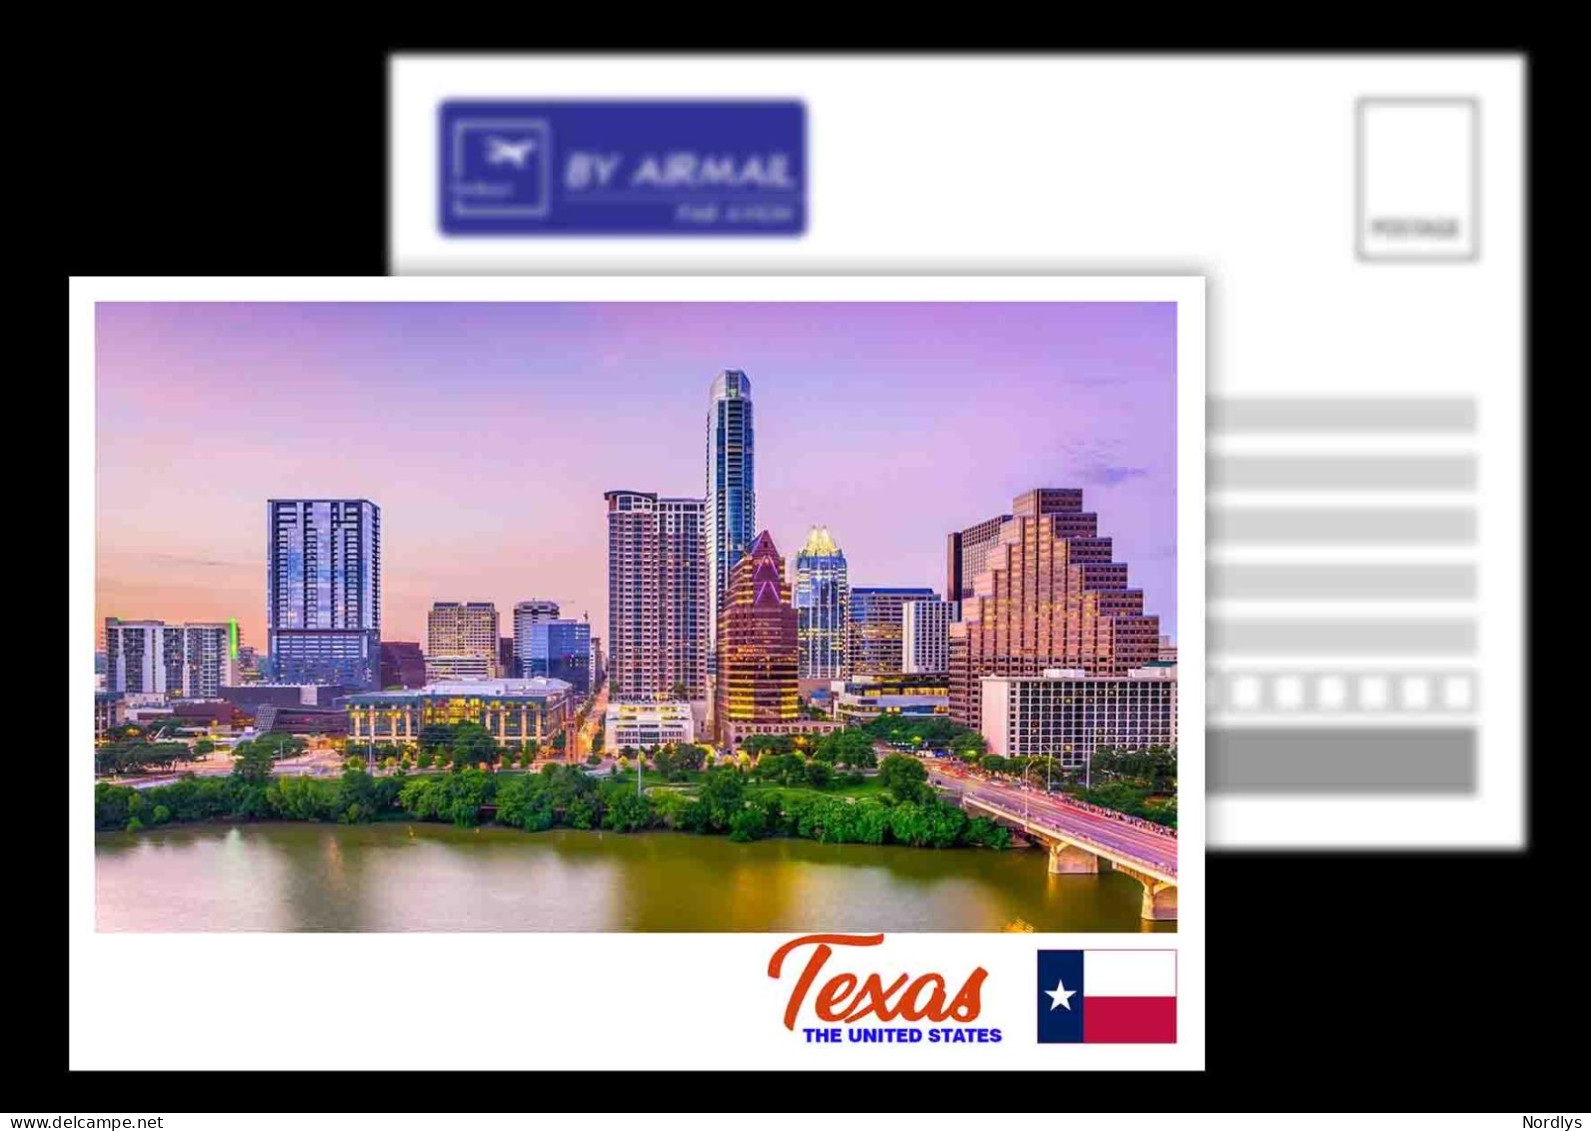 Texas / US States / View Card - Austin